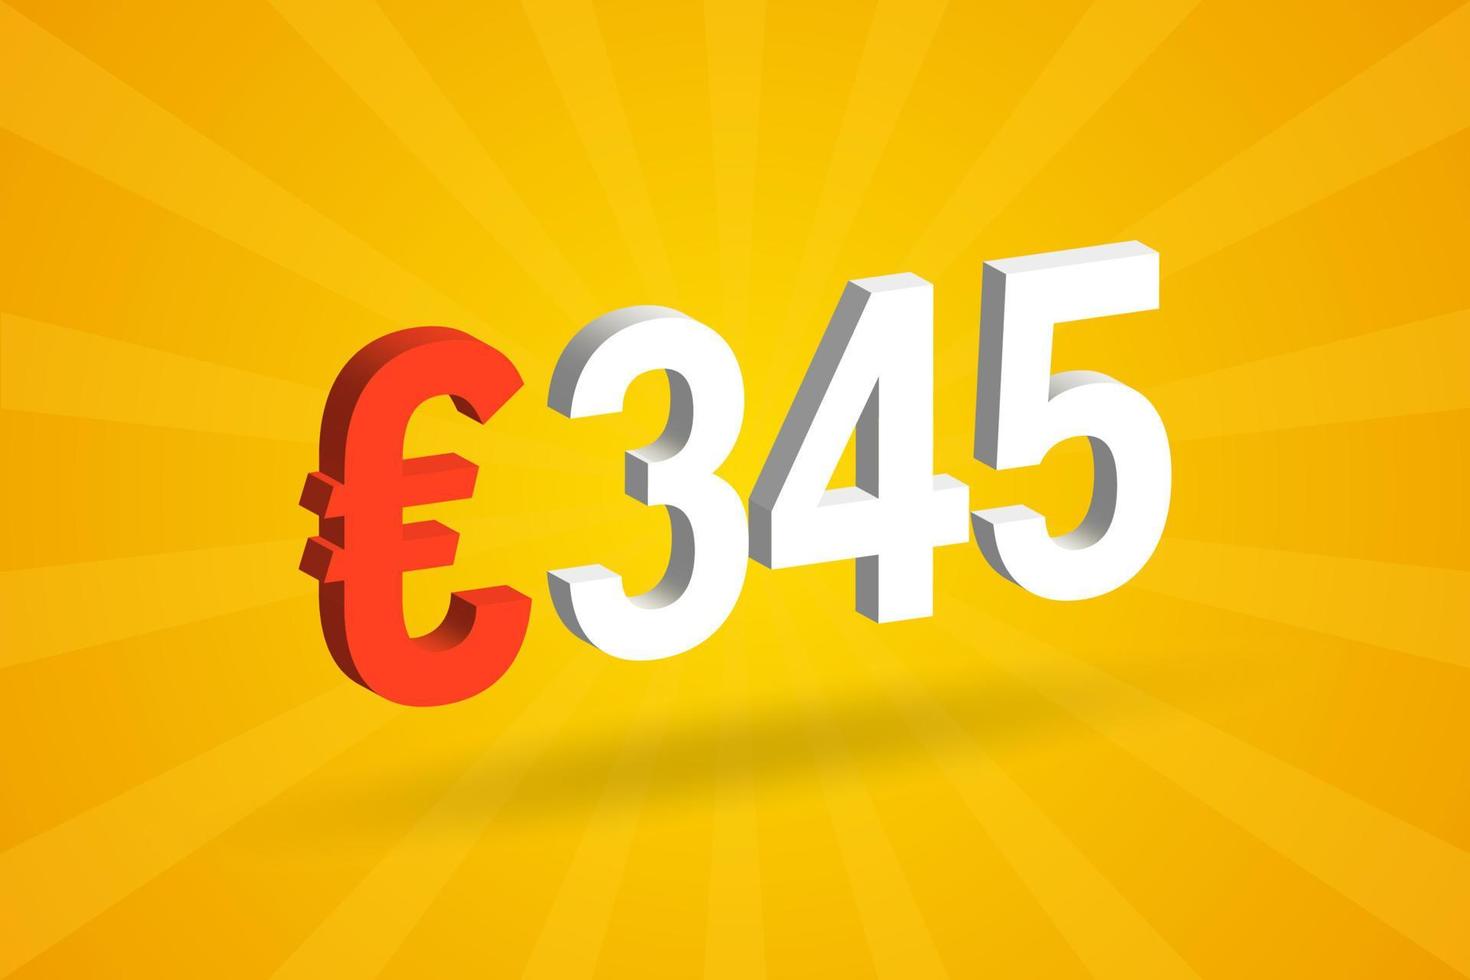 Symbole de texte vectoriel 3d de devise de 345 euros. 3d 345 euro union européenne argent vecteur de stock